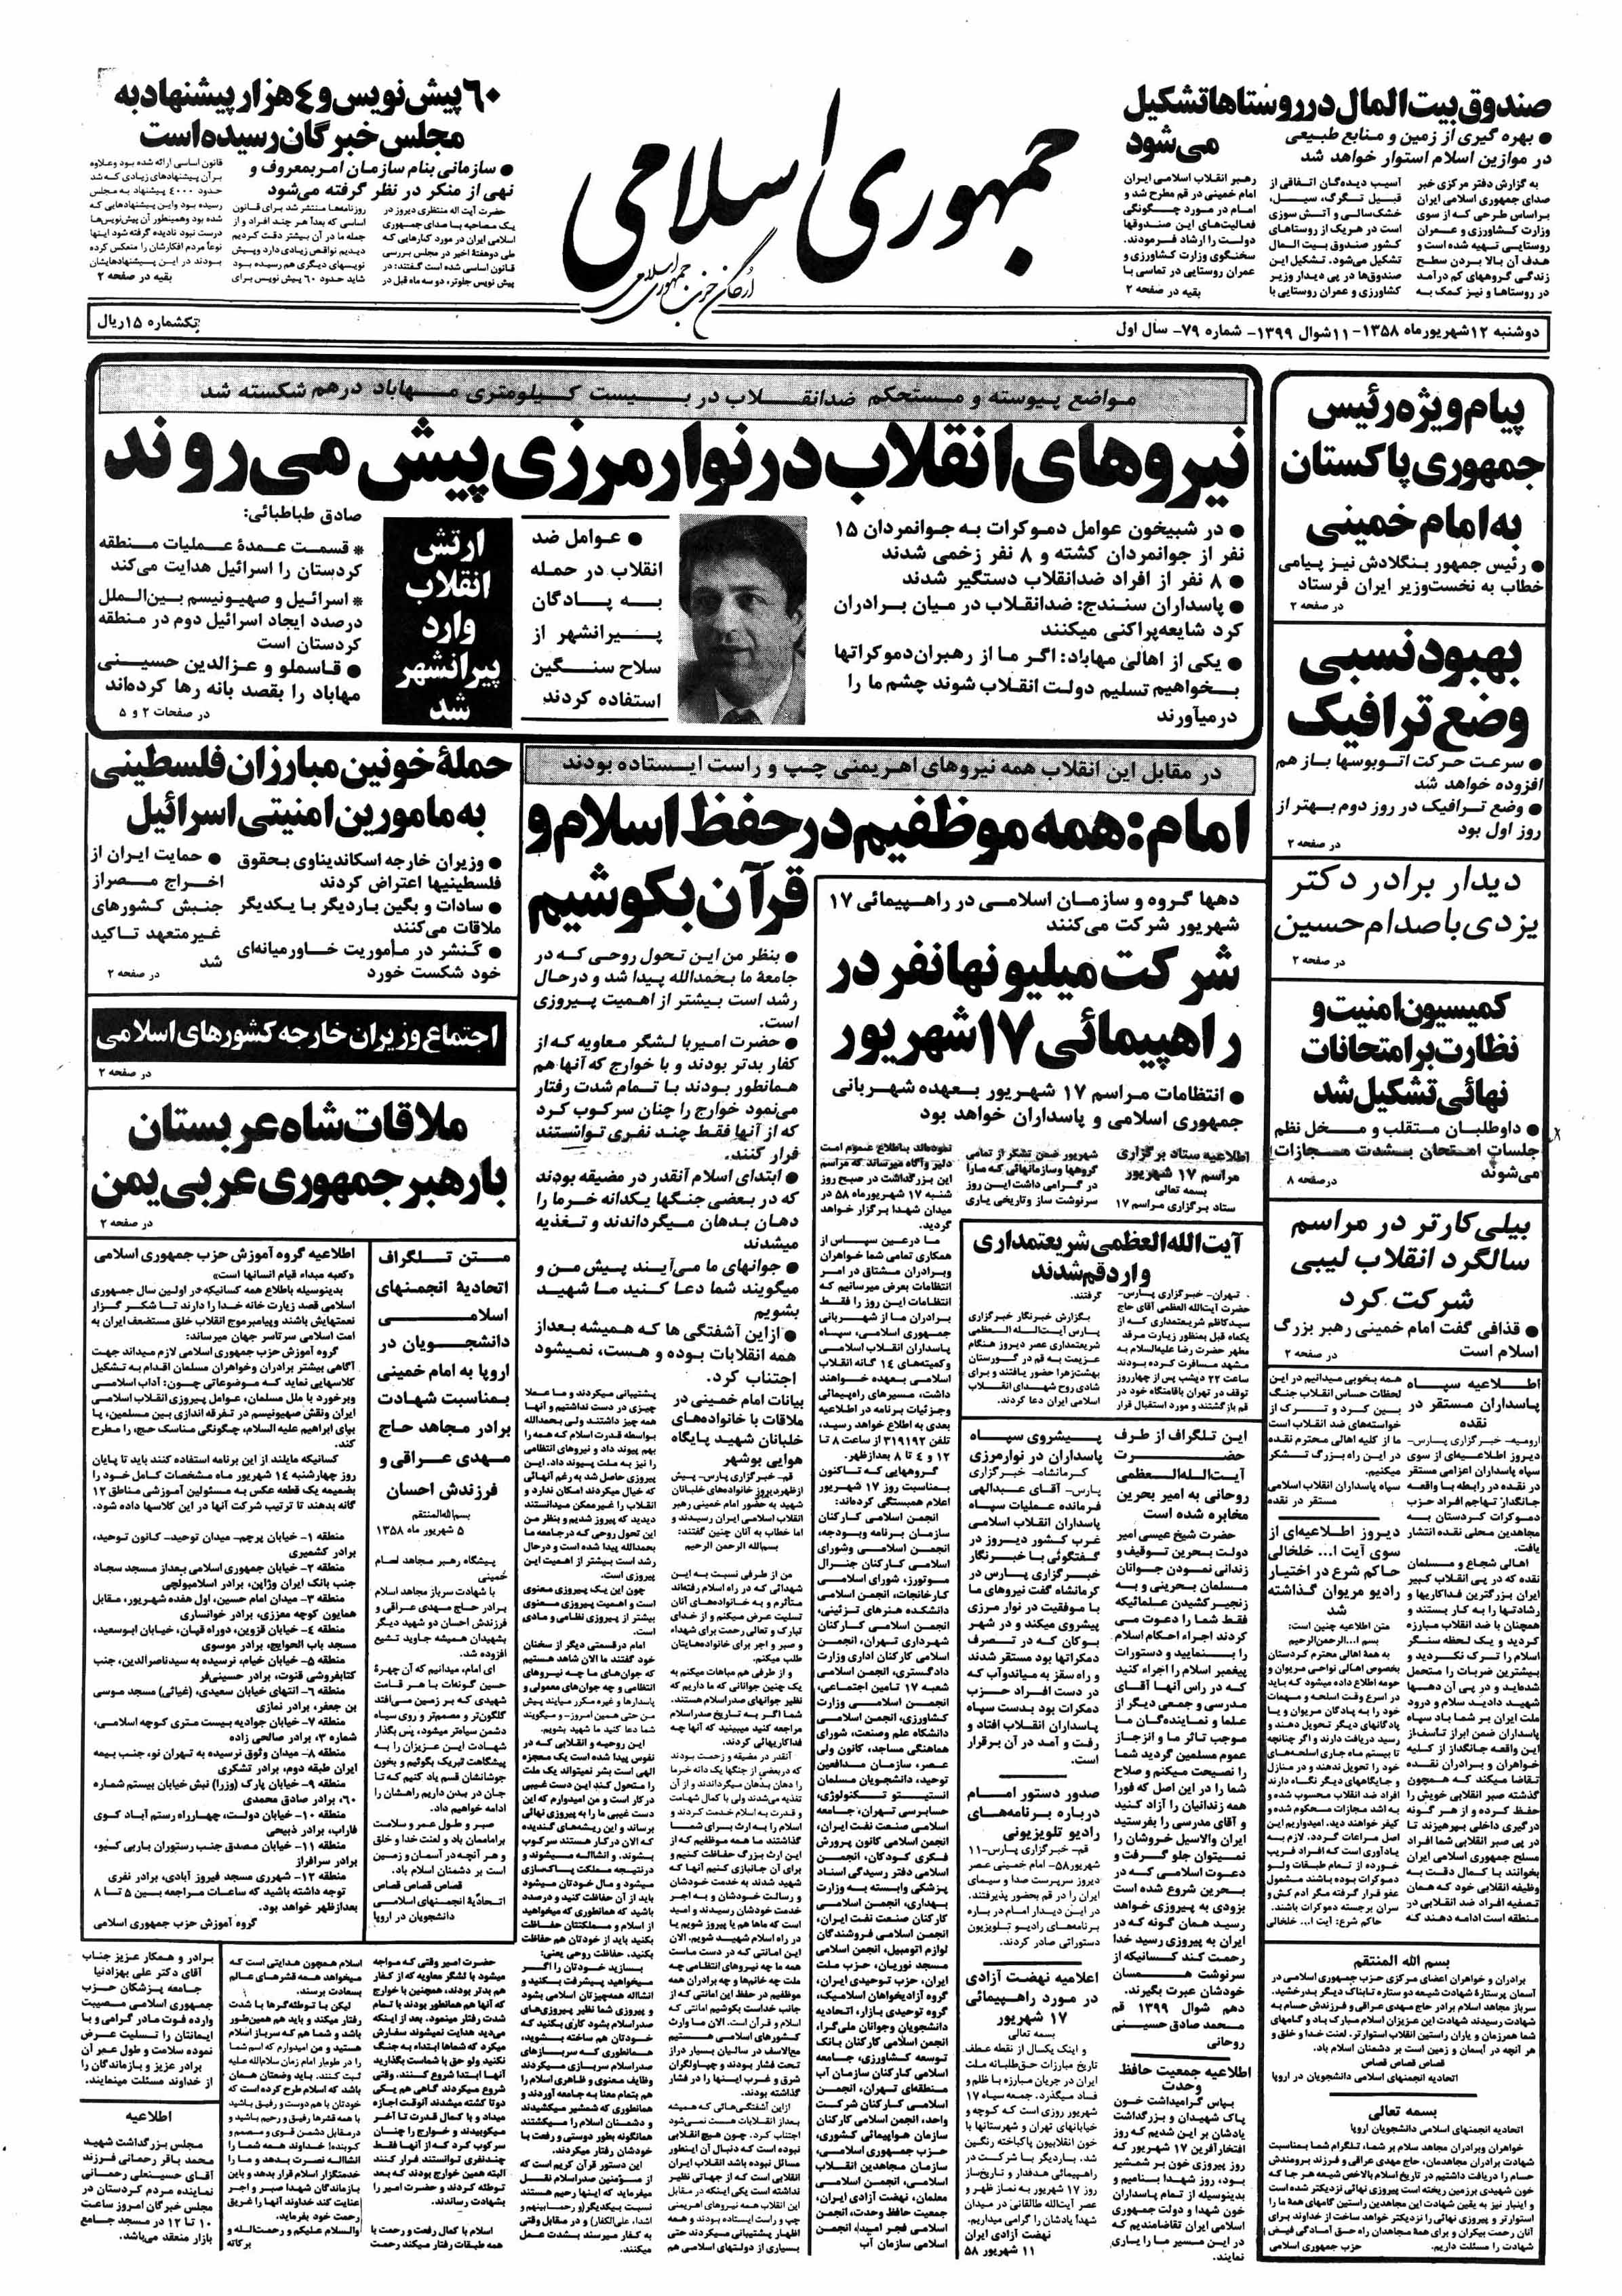 تصویر روزنامه جمهوری اسلامی ۱2 شهریور ۱۳۵۸